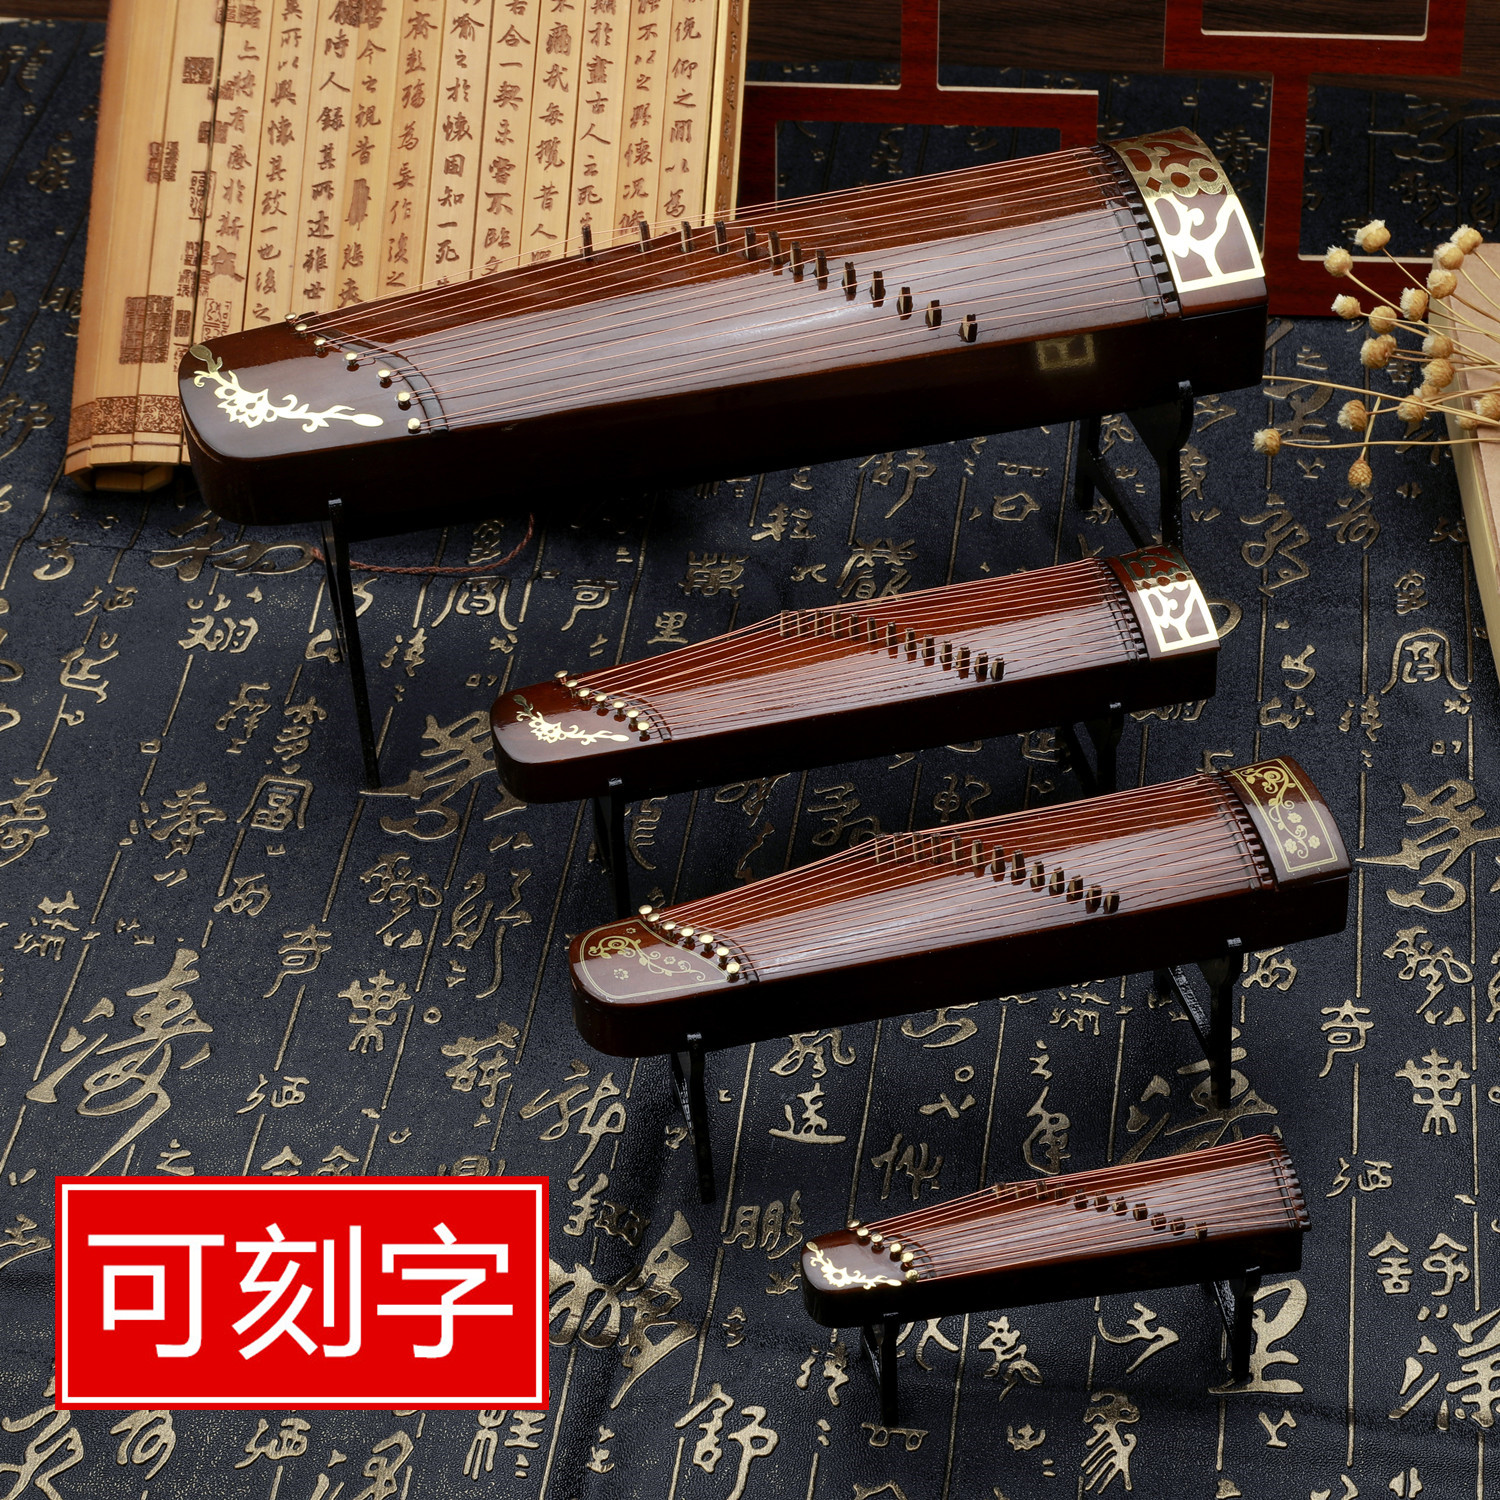 古筝模型古琴模型琵琶模型摆件6分娃用古筝模型中国传统特色礼品